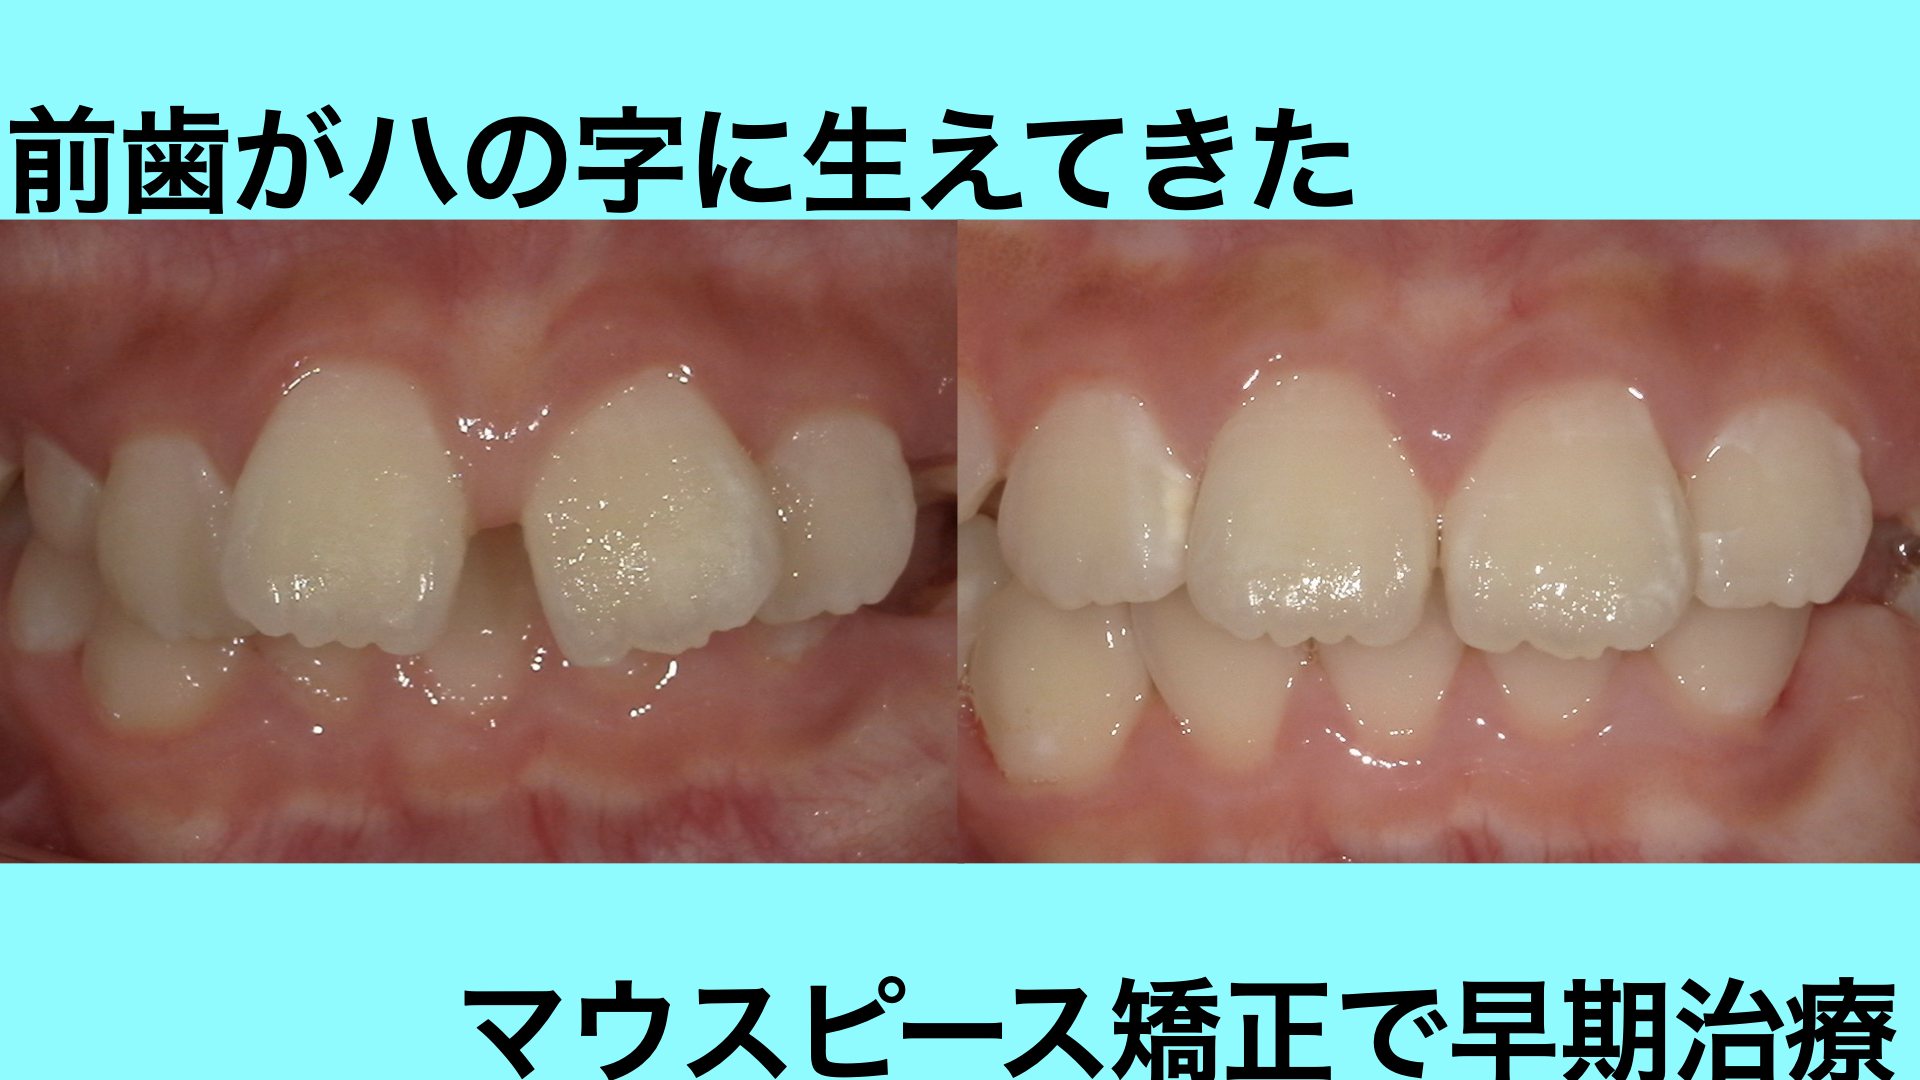 前歯のガタつきと深い噛み合わせをマウスピースで改善した症例